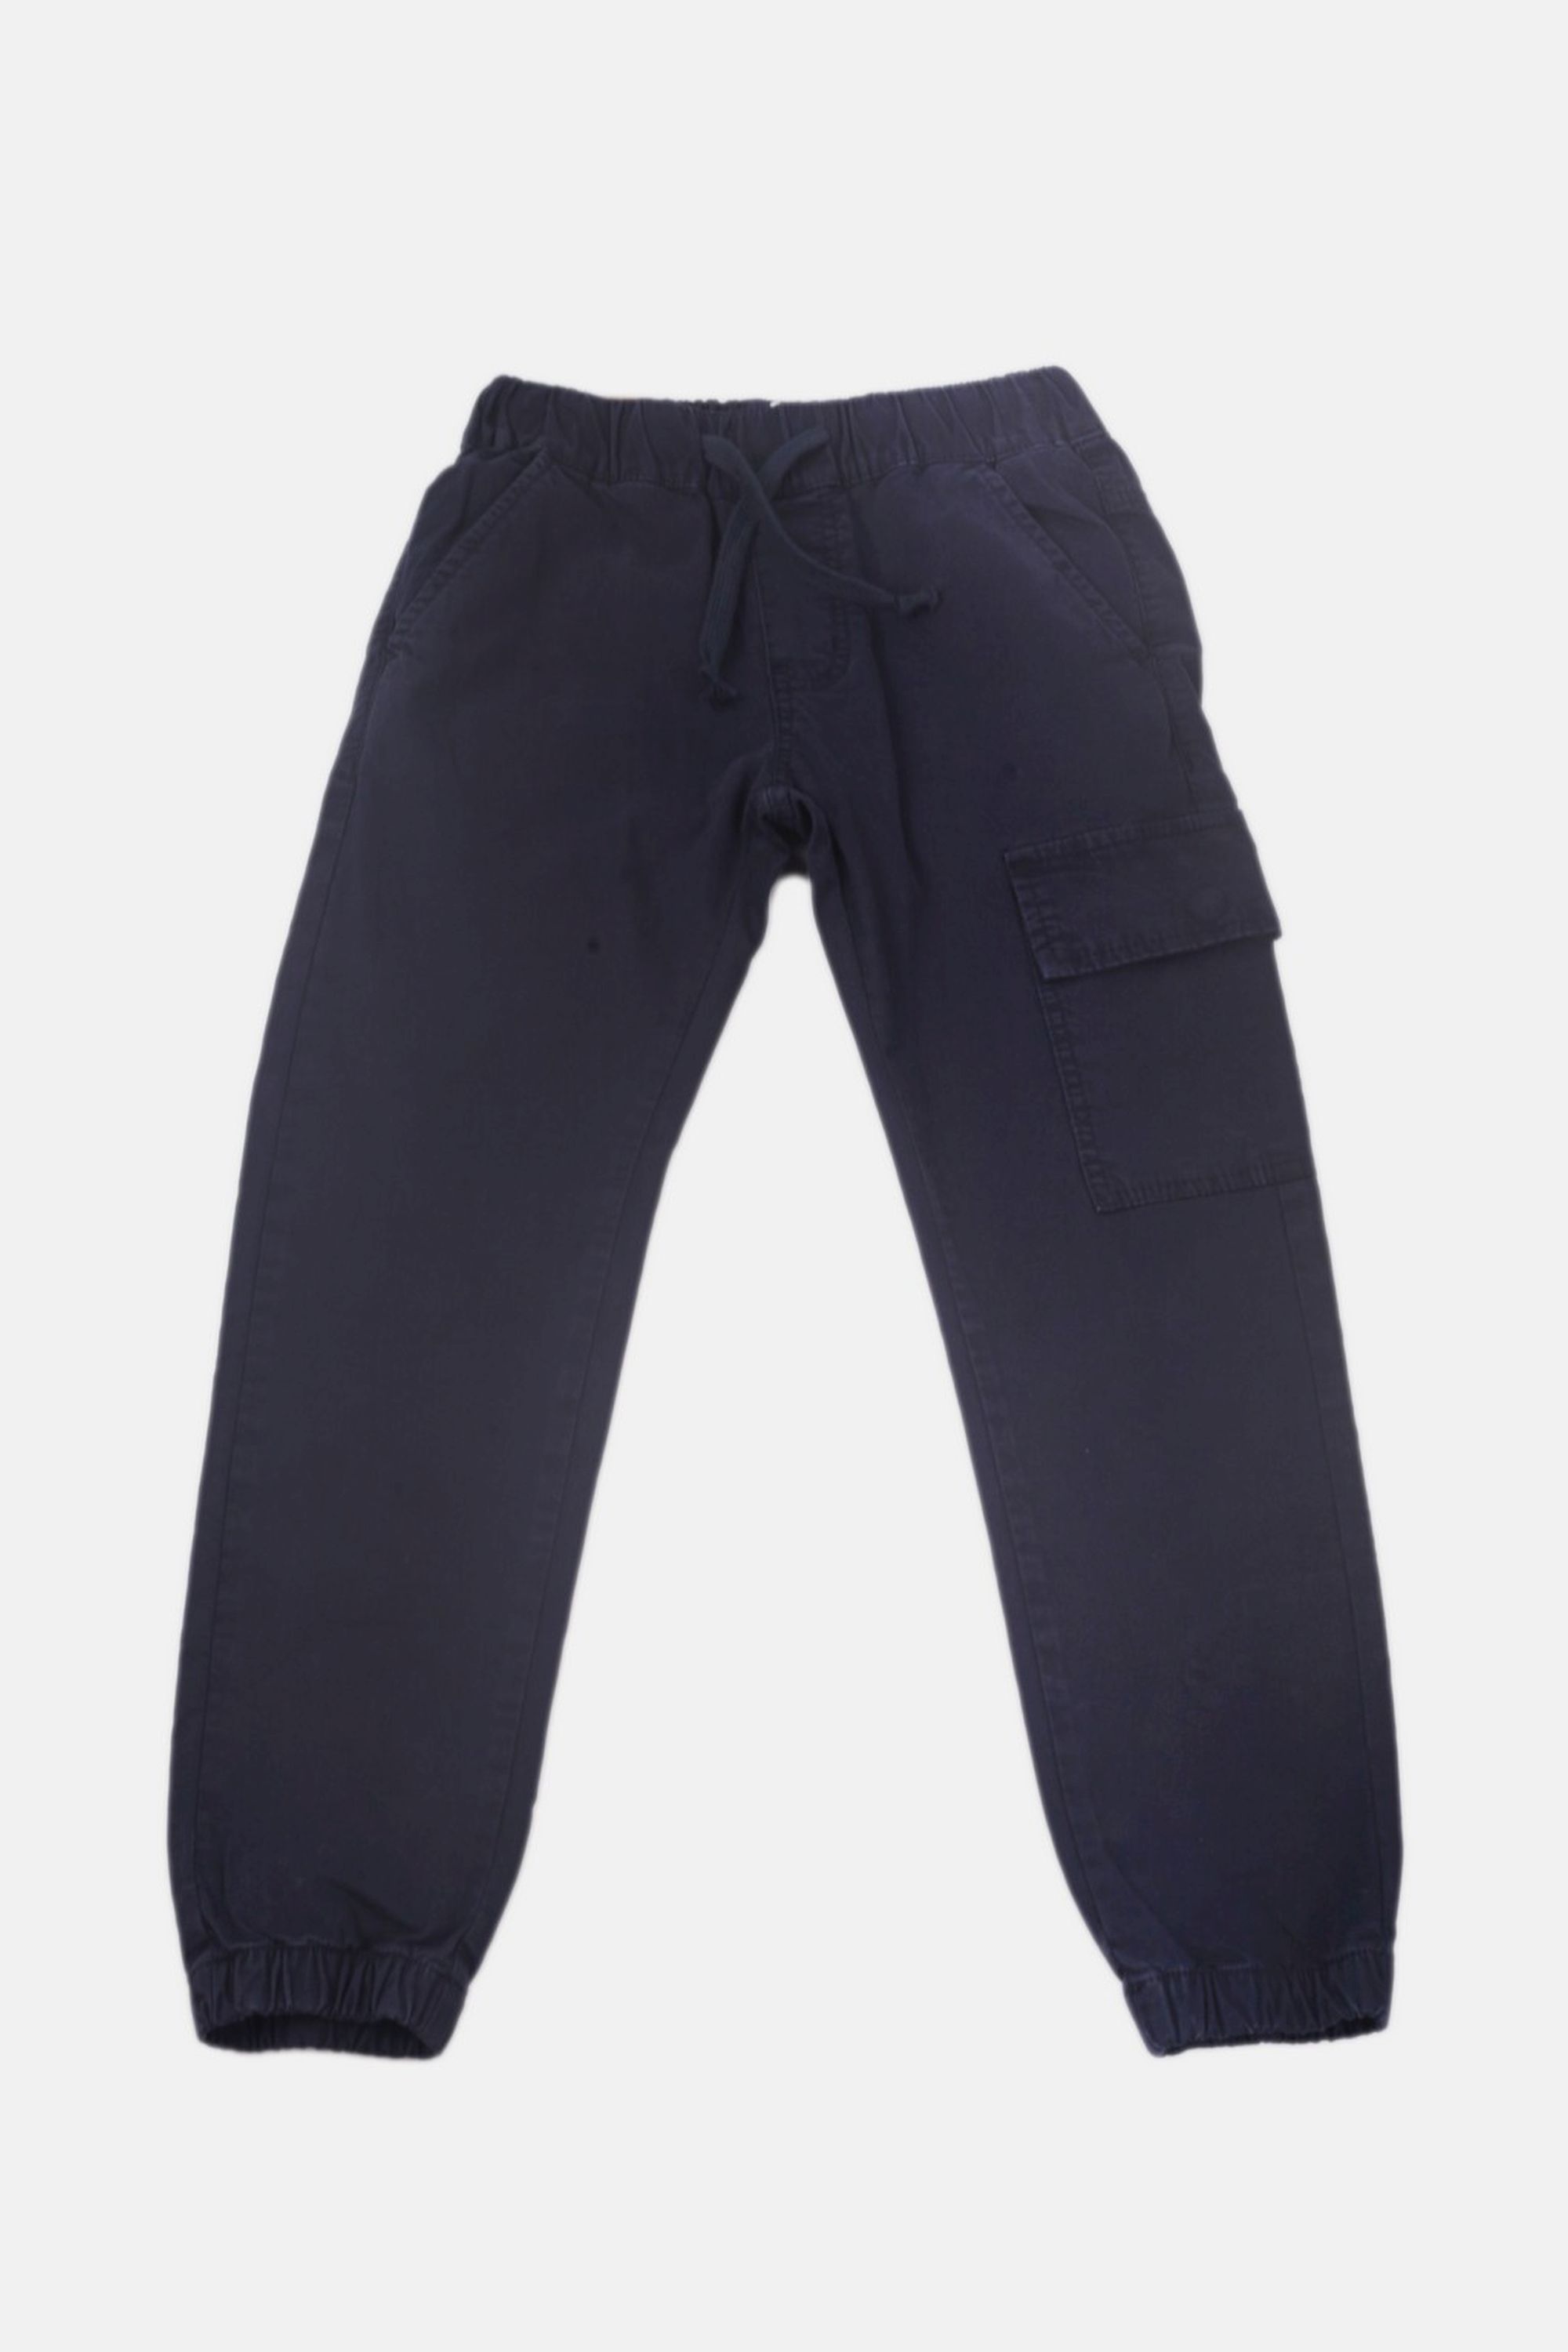 Chlapecké bavlněné kalhoty s gumou v pase/Hnědá, modrá Barva: Modrá, Velikost: Vel. 12 (144/150 cm)